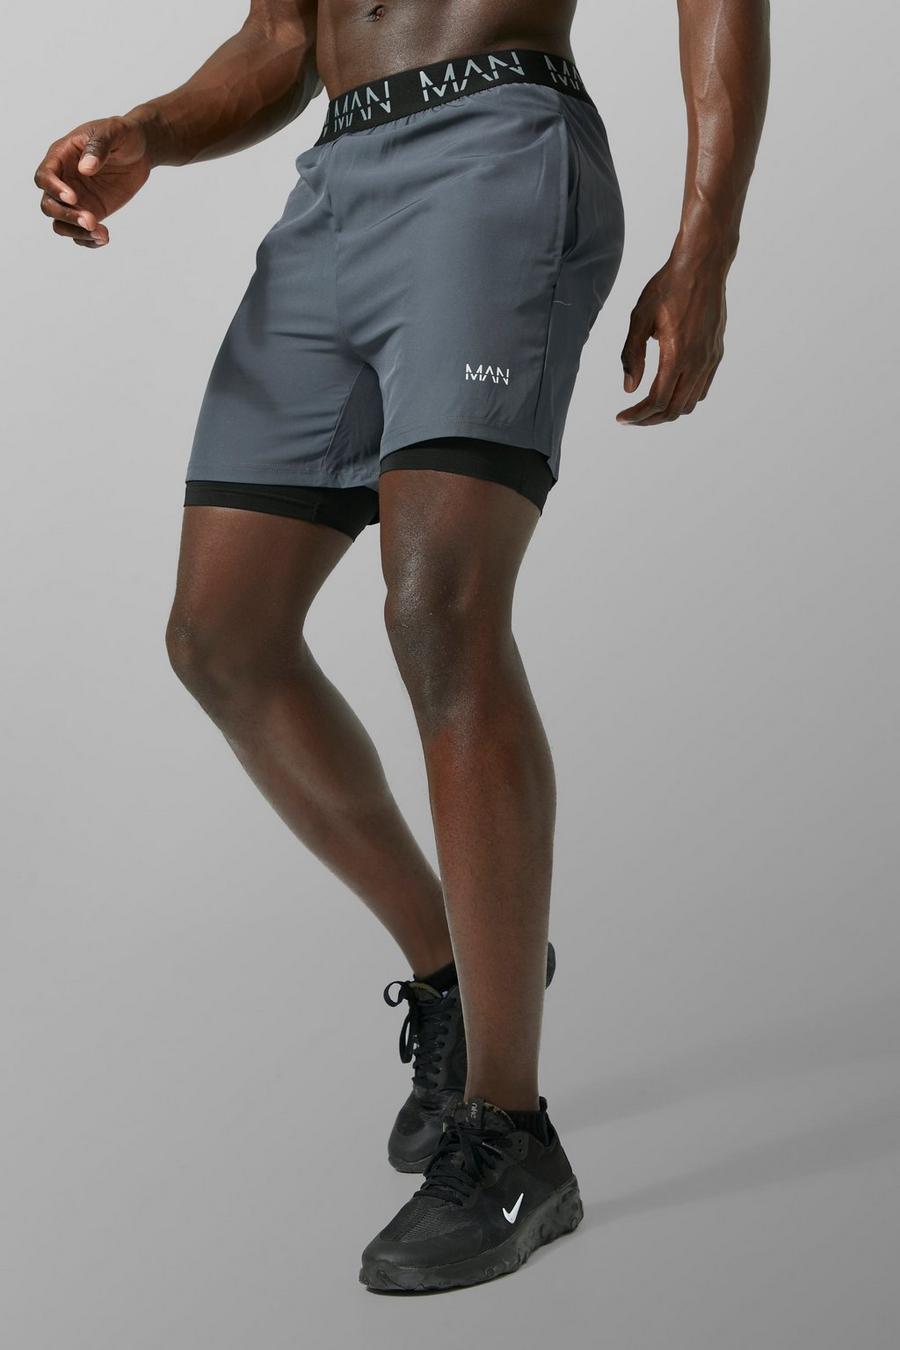 Houtskool grau Active Man 2-In-1 Shorts